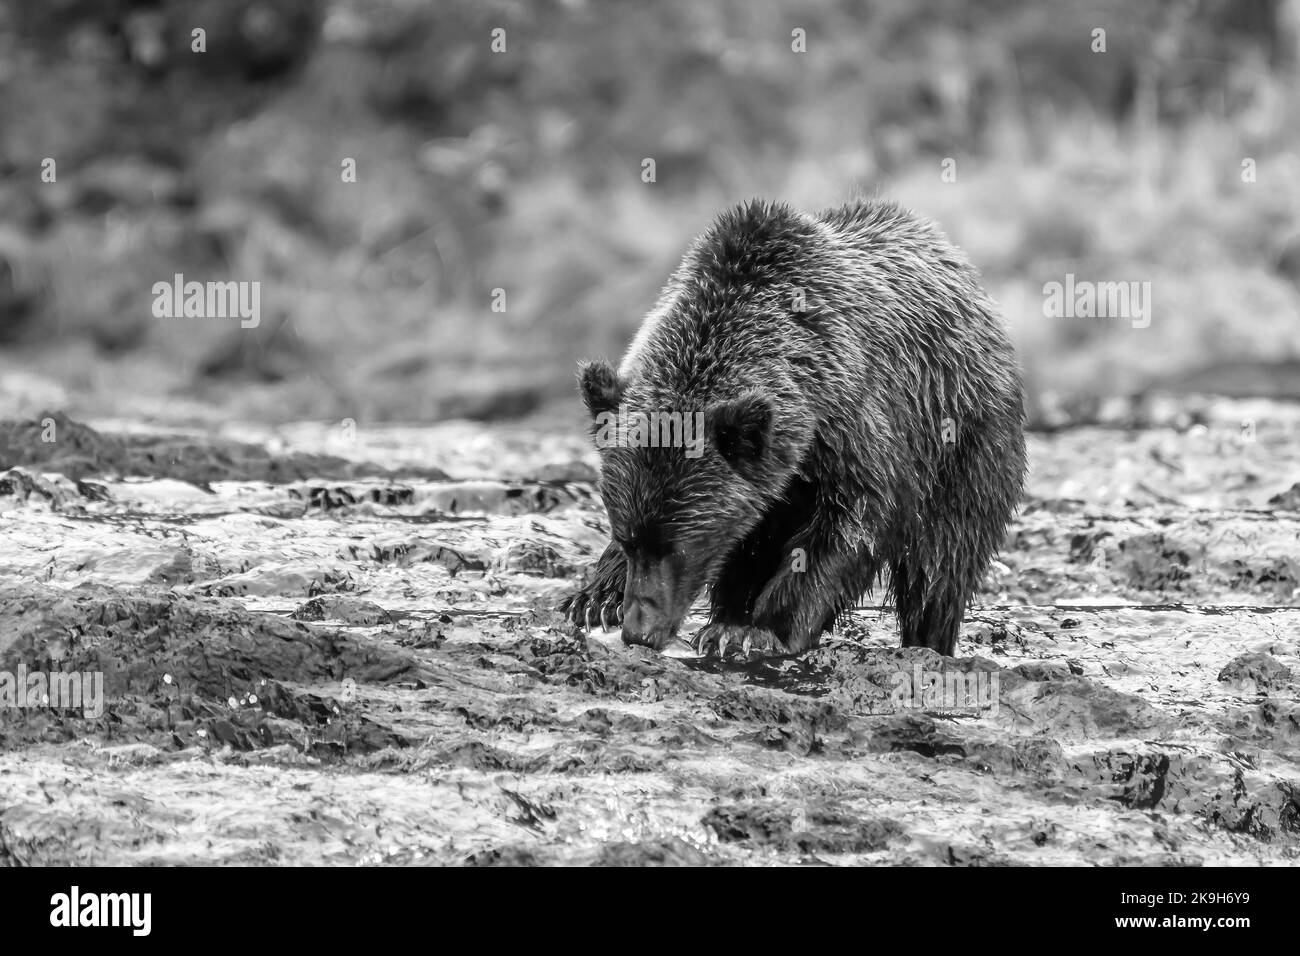 Photo en noir et blanc d'un ours brun (grizzli) côtier (Ursus arctos horribilis) qui sente un saumon dans une rivière du sud-est de l'Alaska, aux États-Unis. Banque D'Images